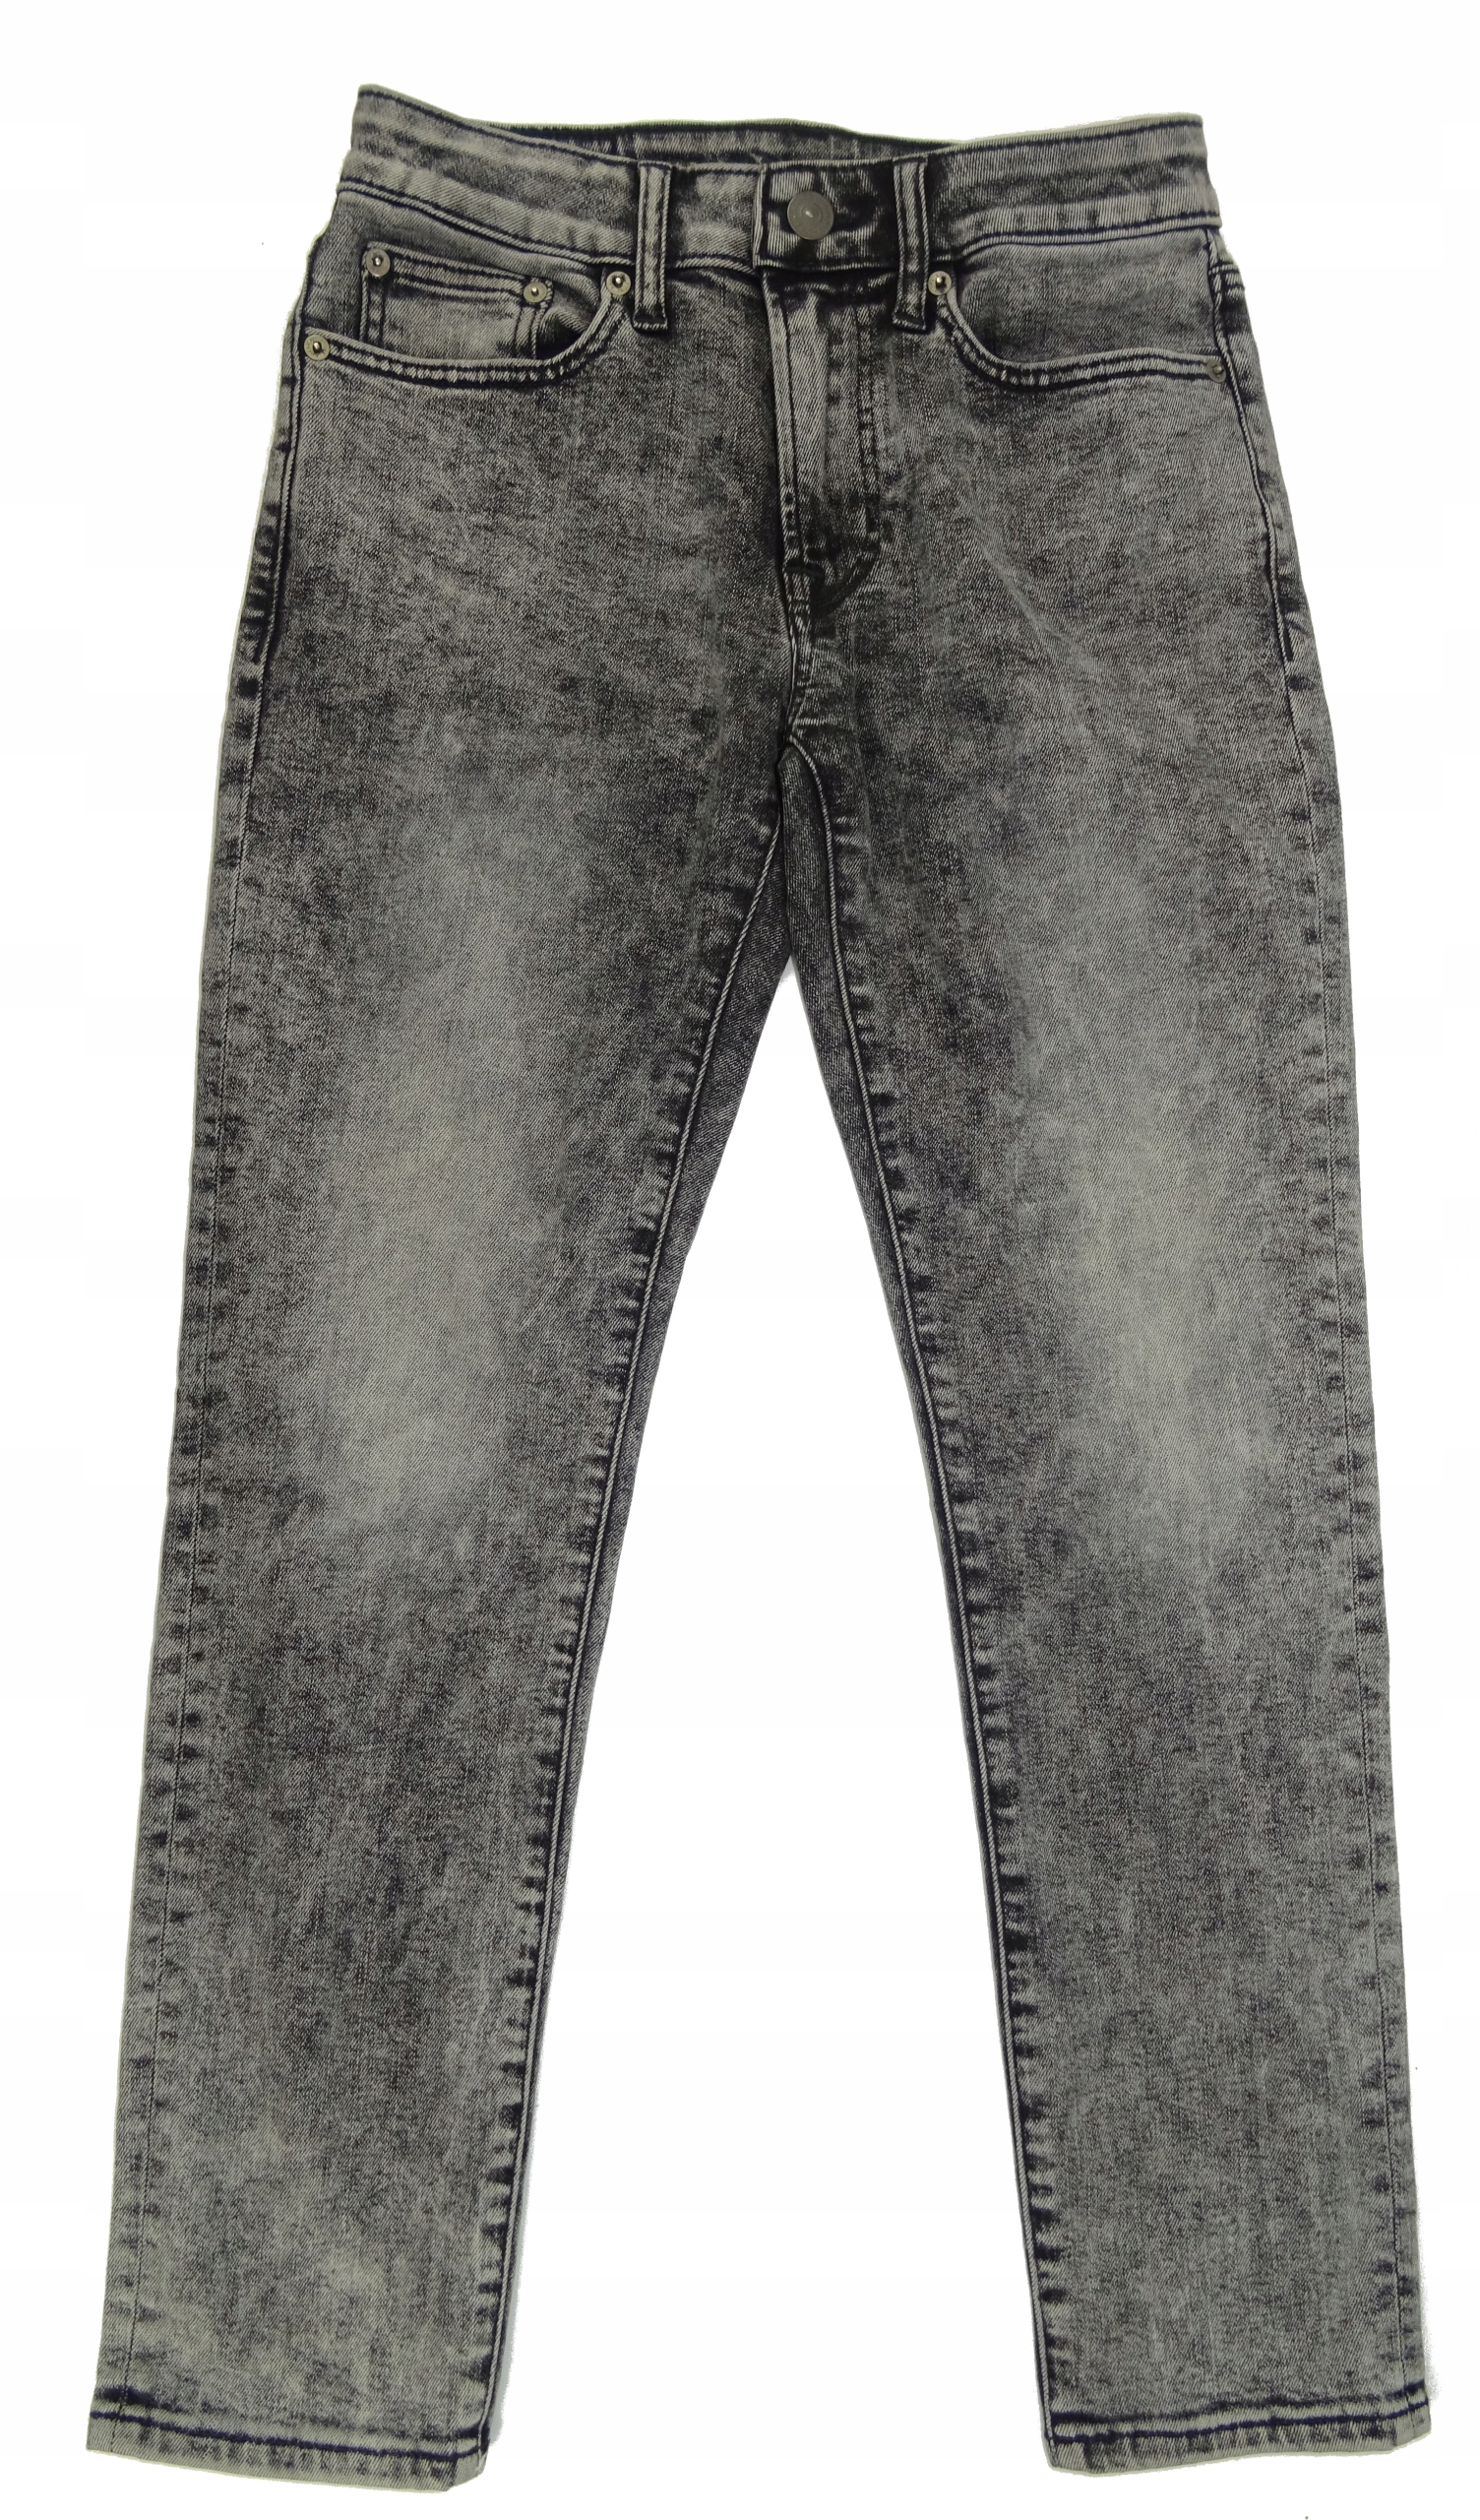 Spodnie jeans AMERICAN EAGLE z USA 28/28 pas 74 cm